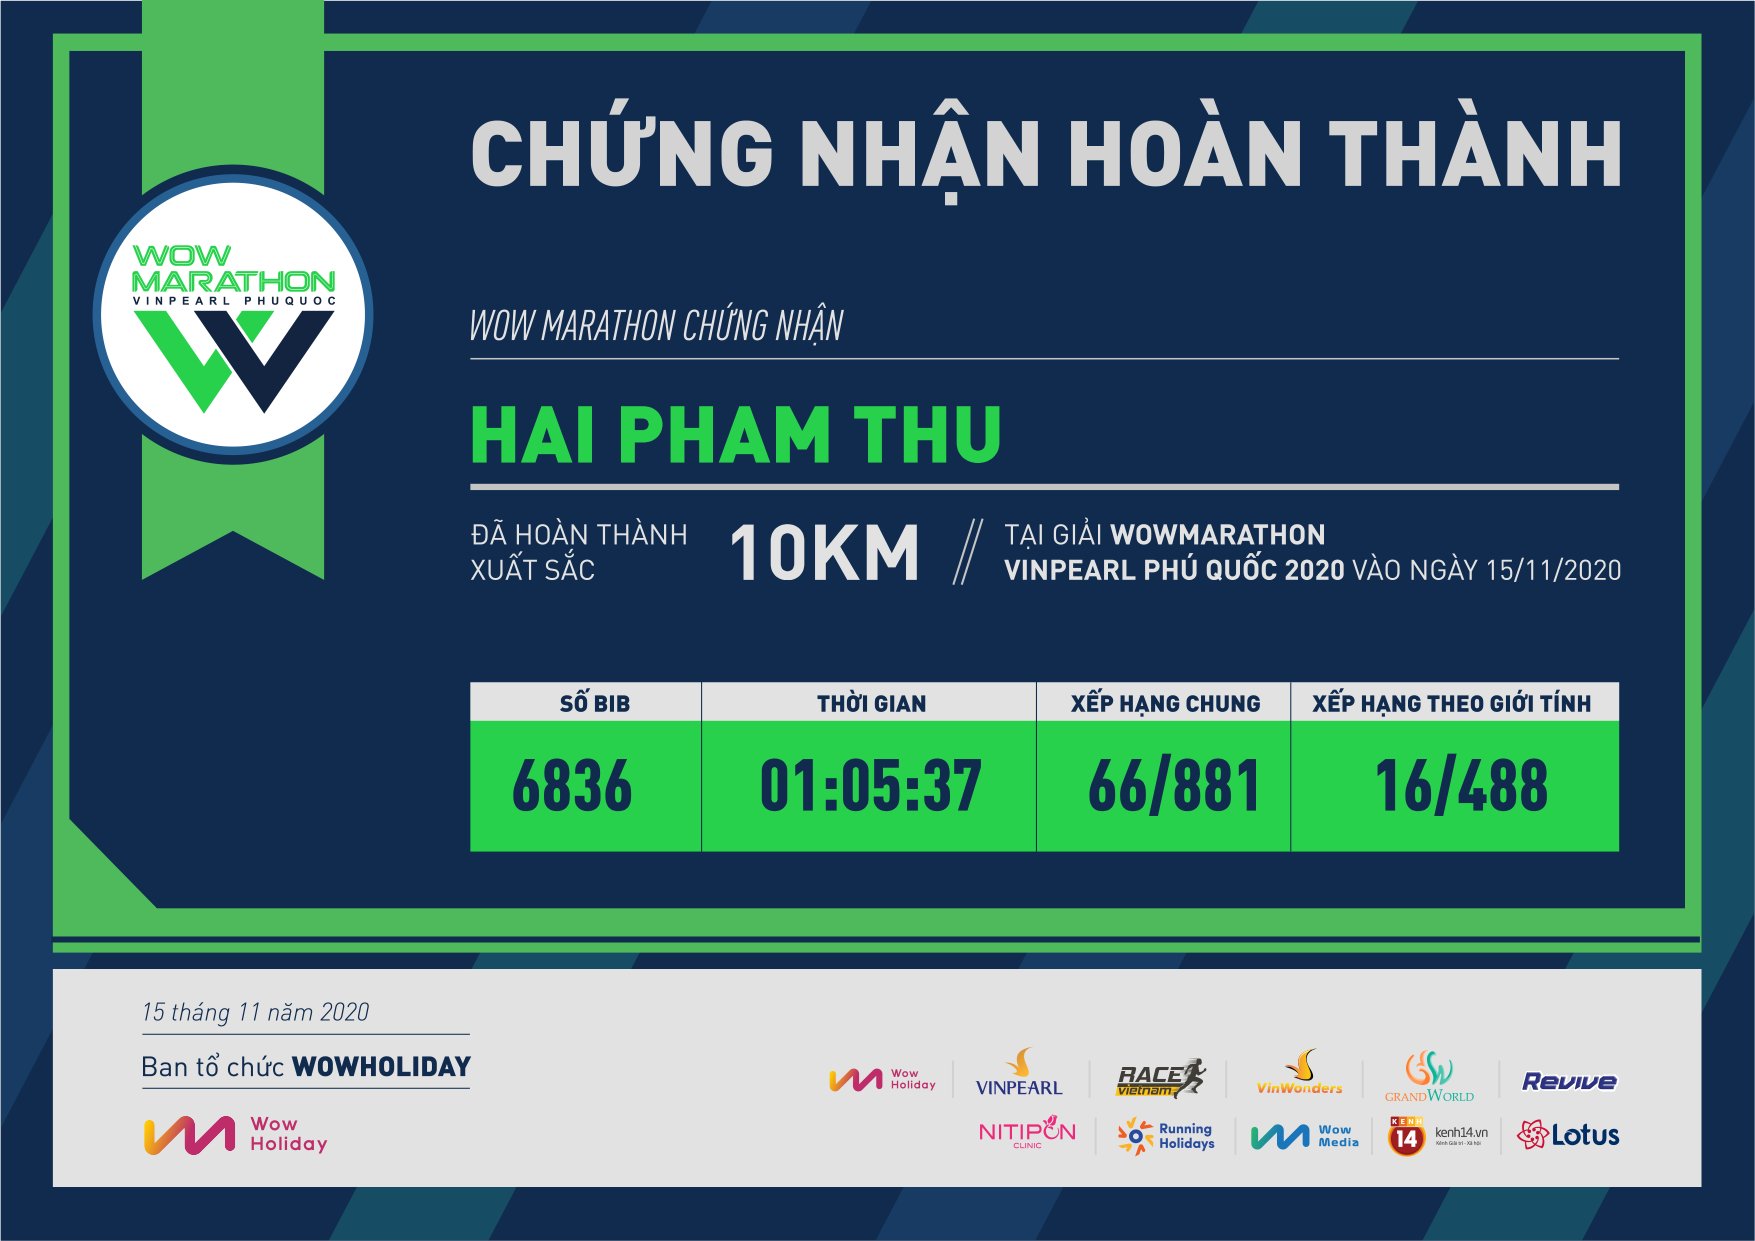 6836 - Hai Pham Thu